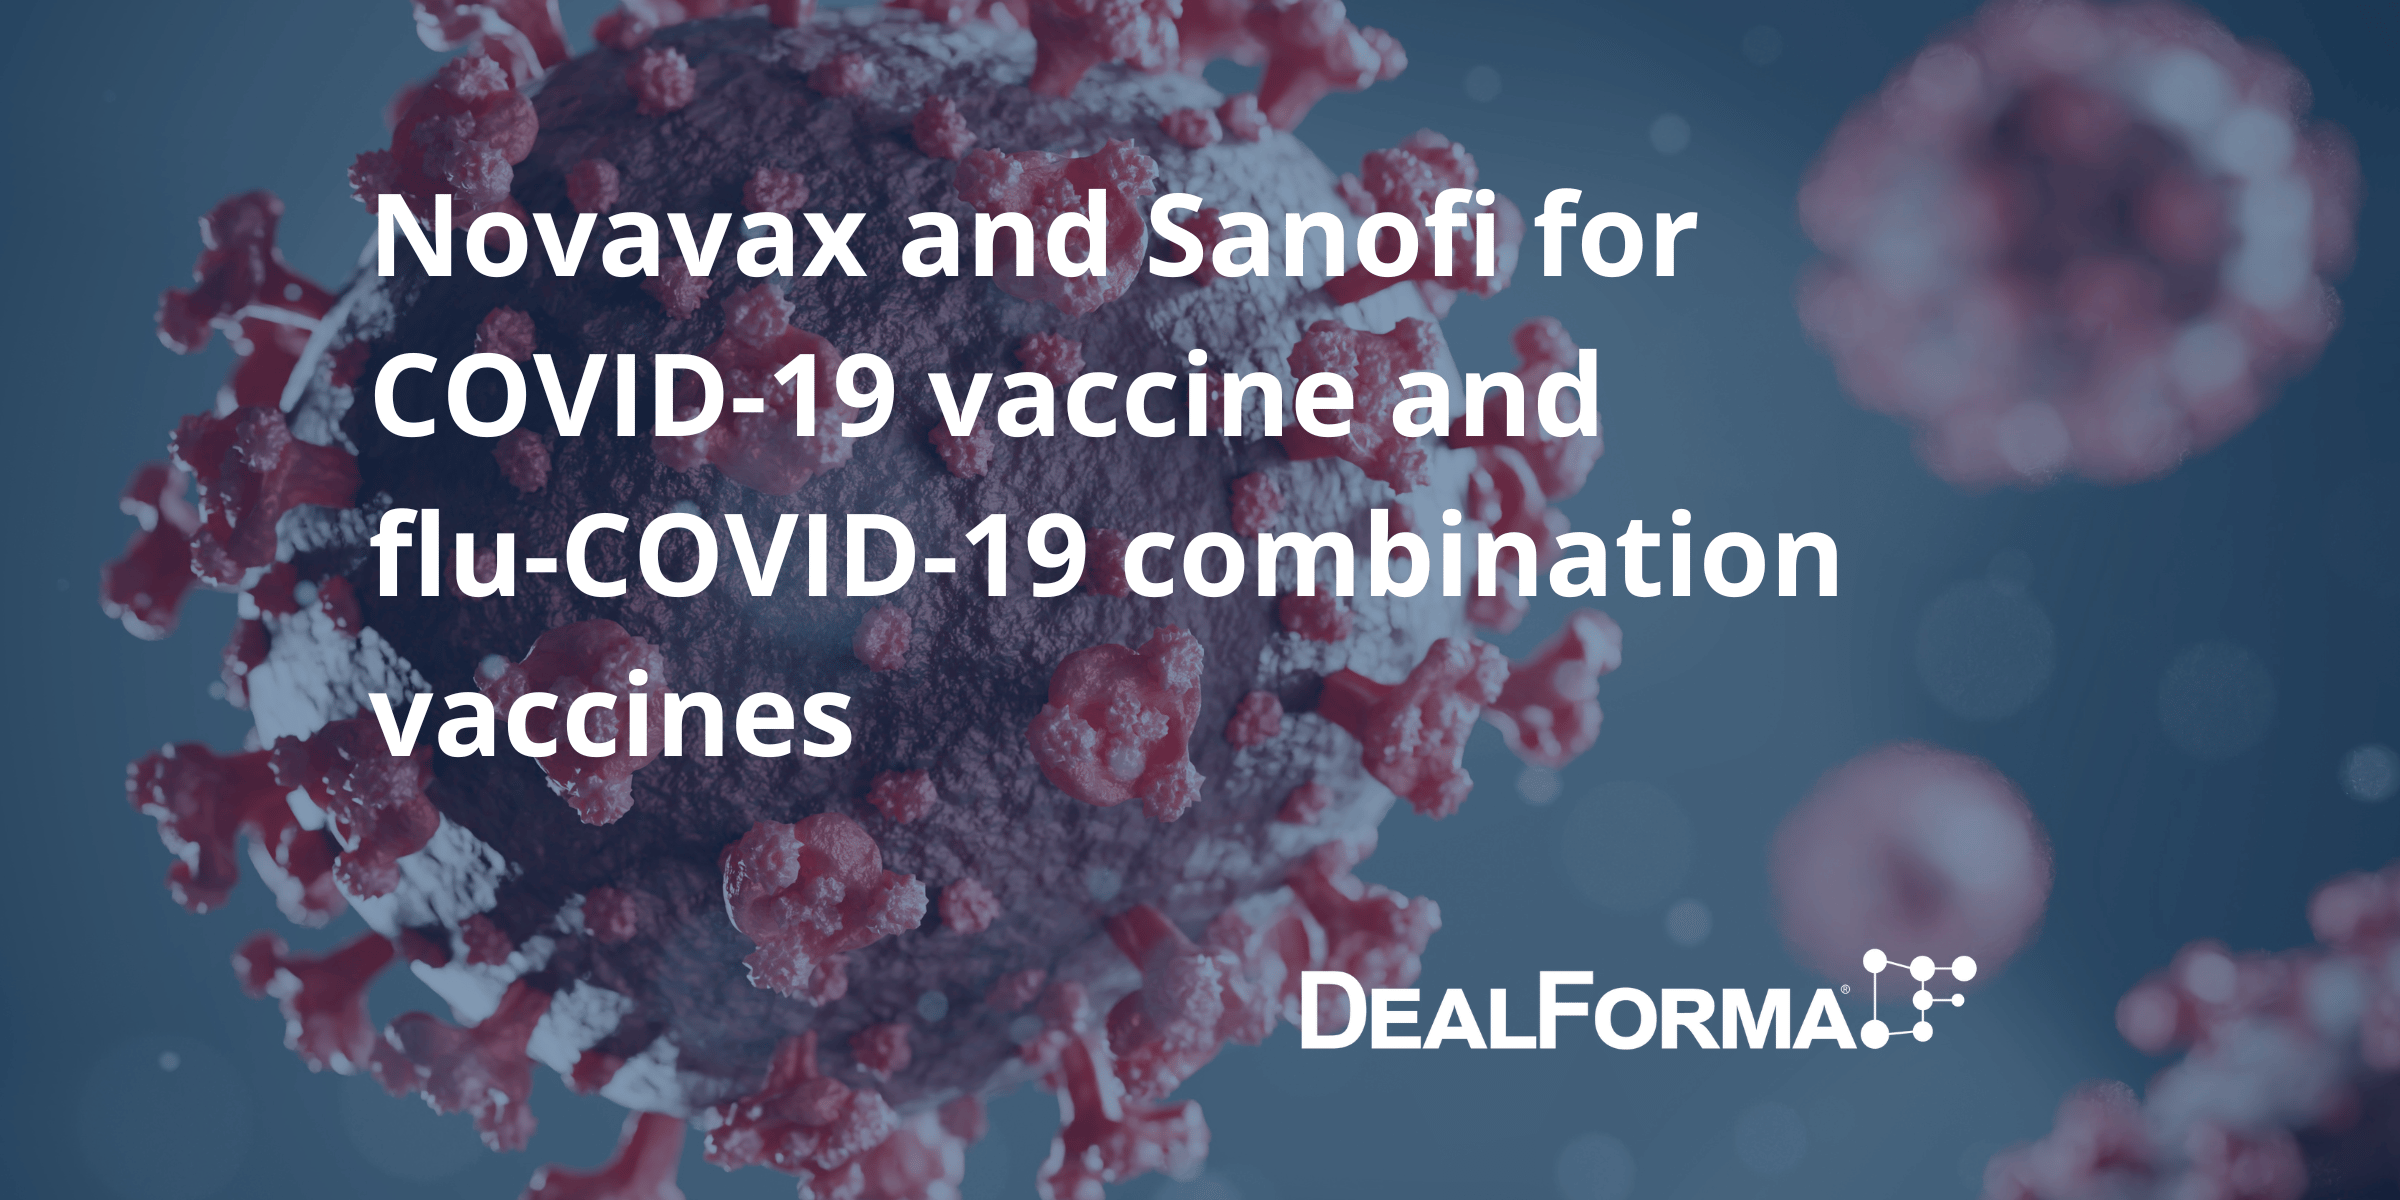 Novavax and Sanofi for COVID-19 vaccine and flu-COVID-19 combination vaccines